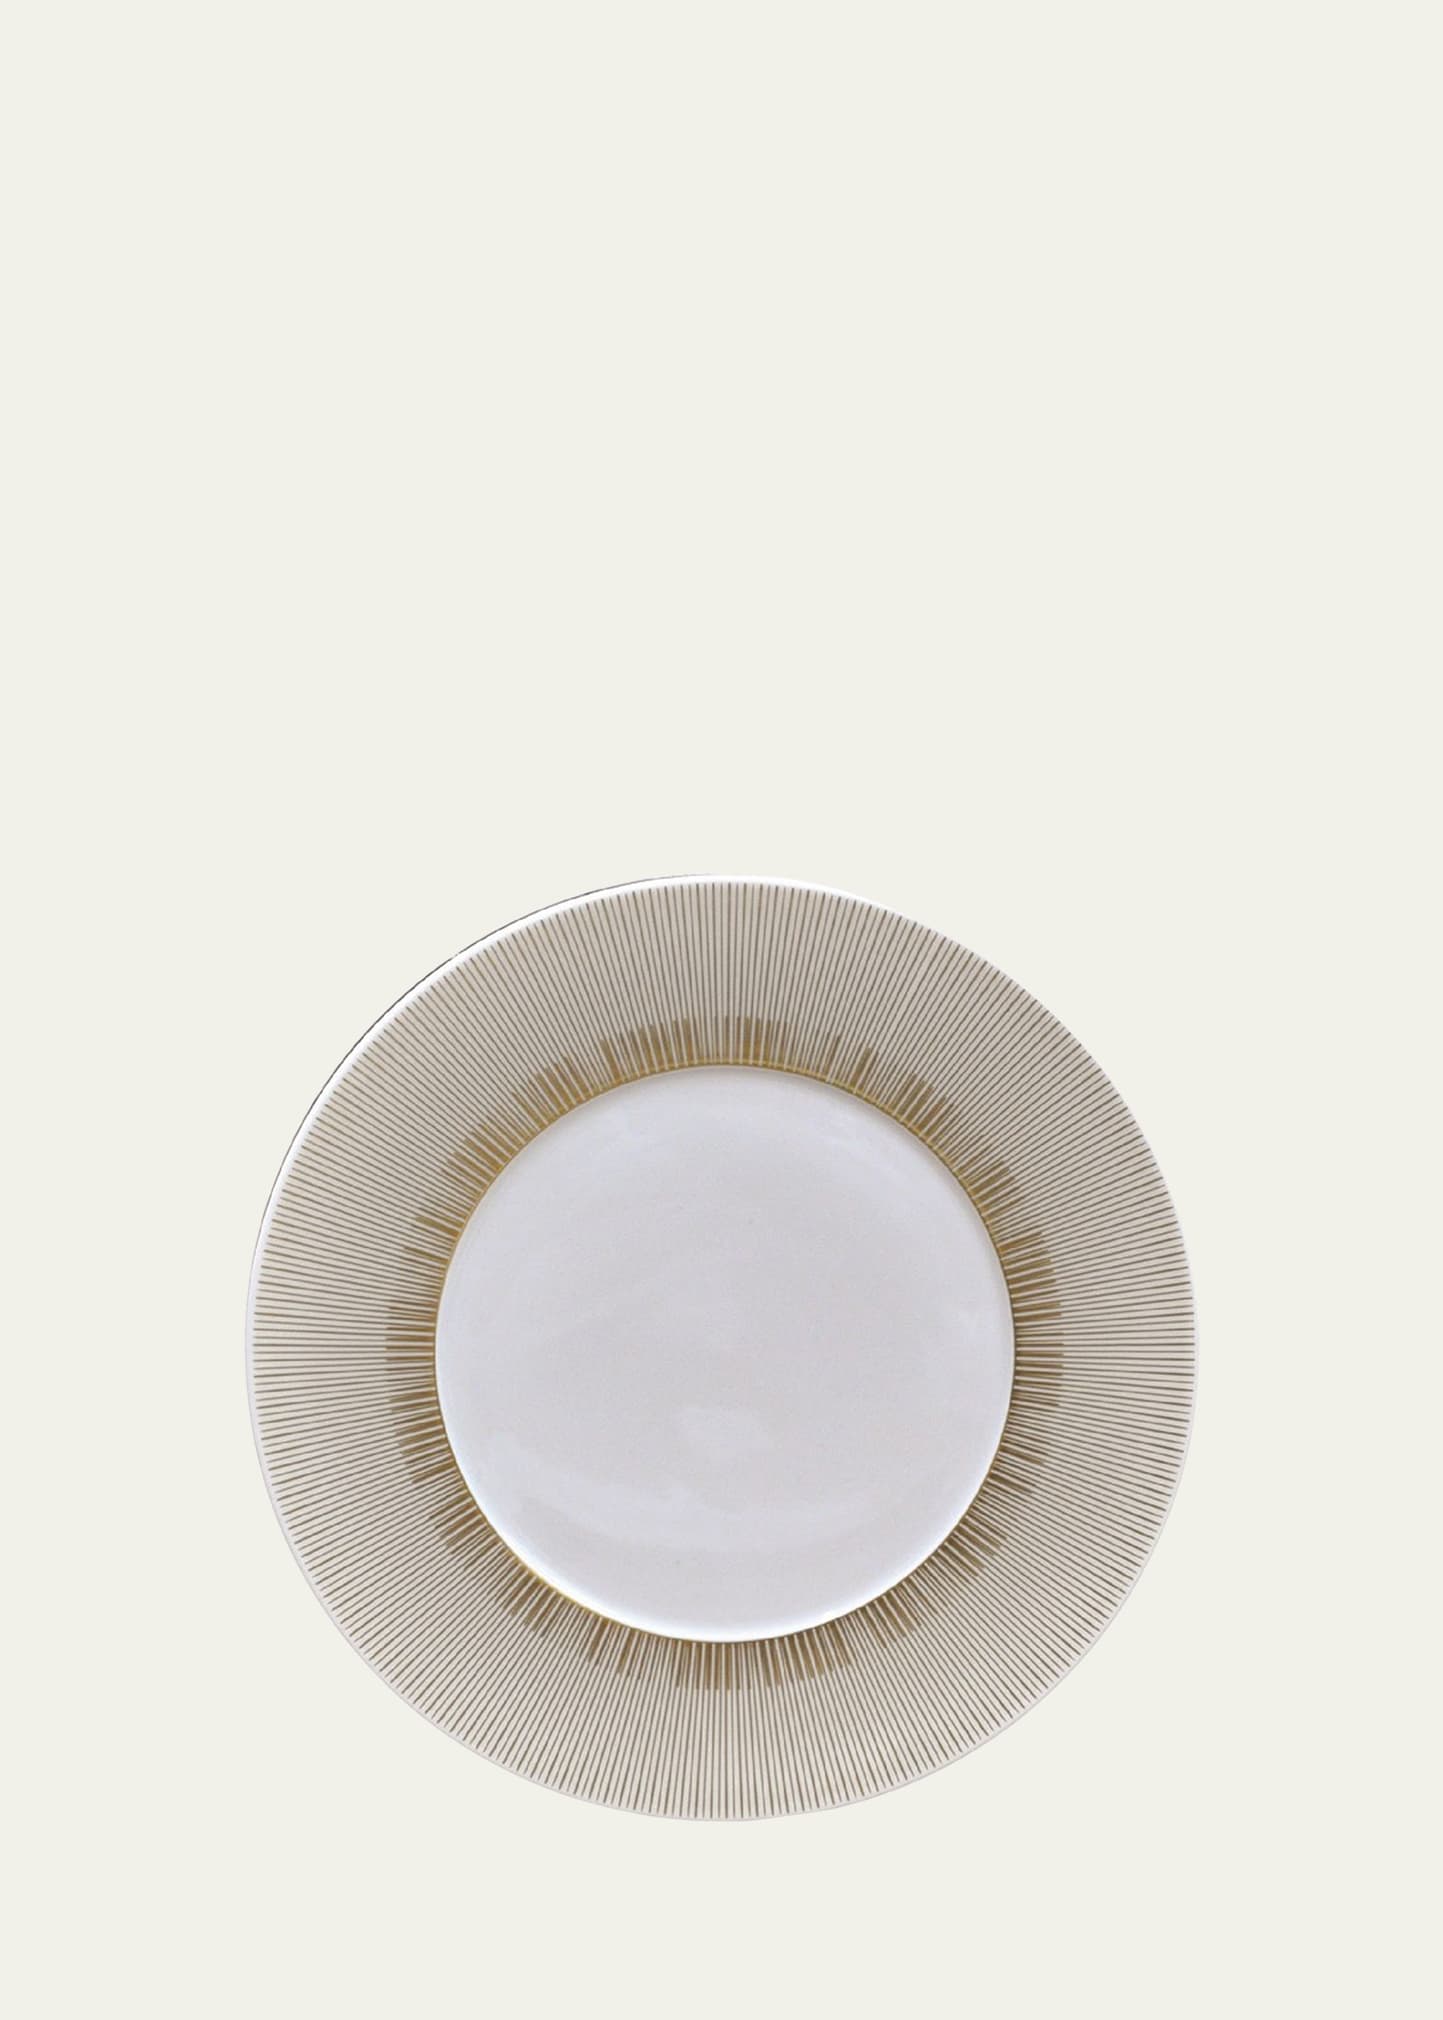 Priana Dinner Plate, 10.6"